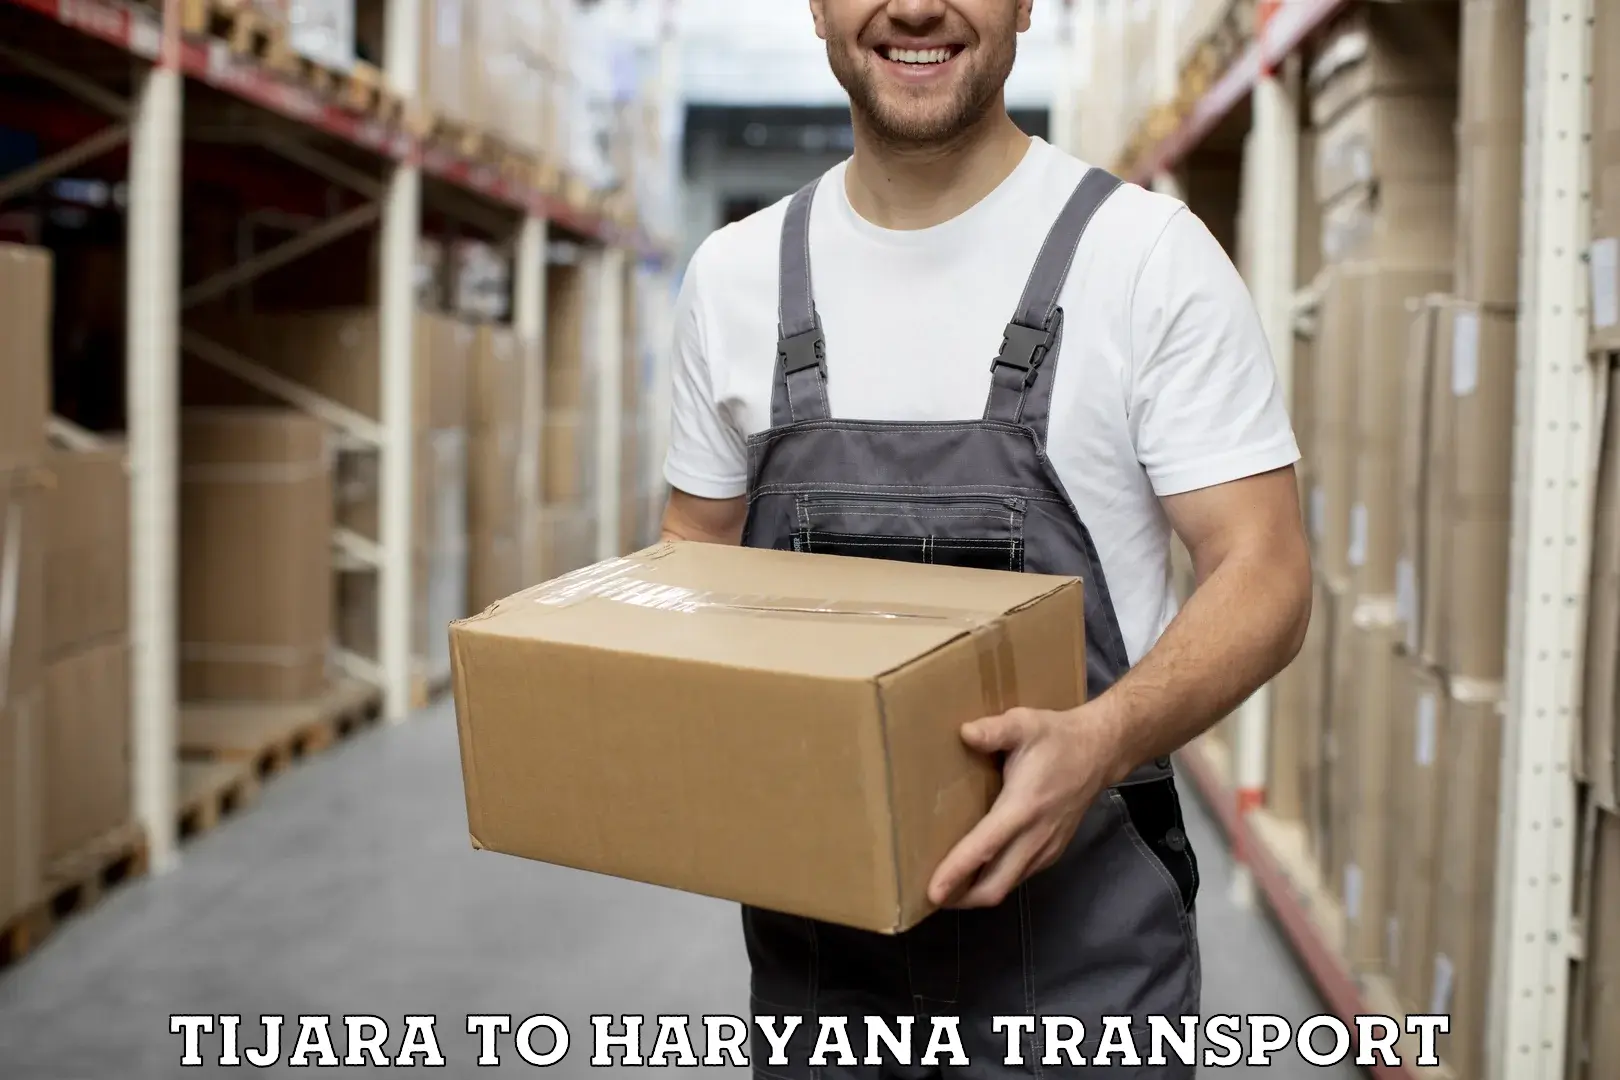 Road transport online services Tijara to Chirya